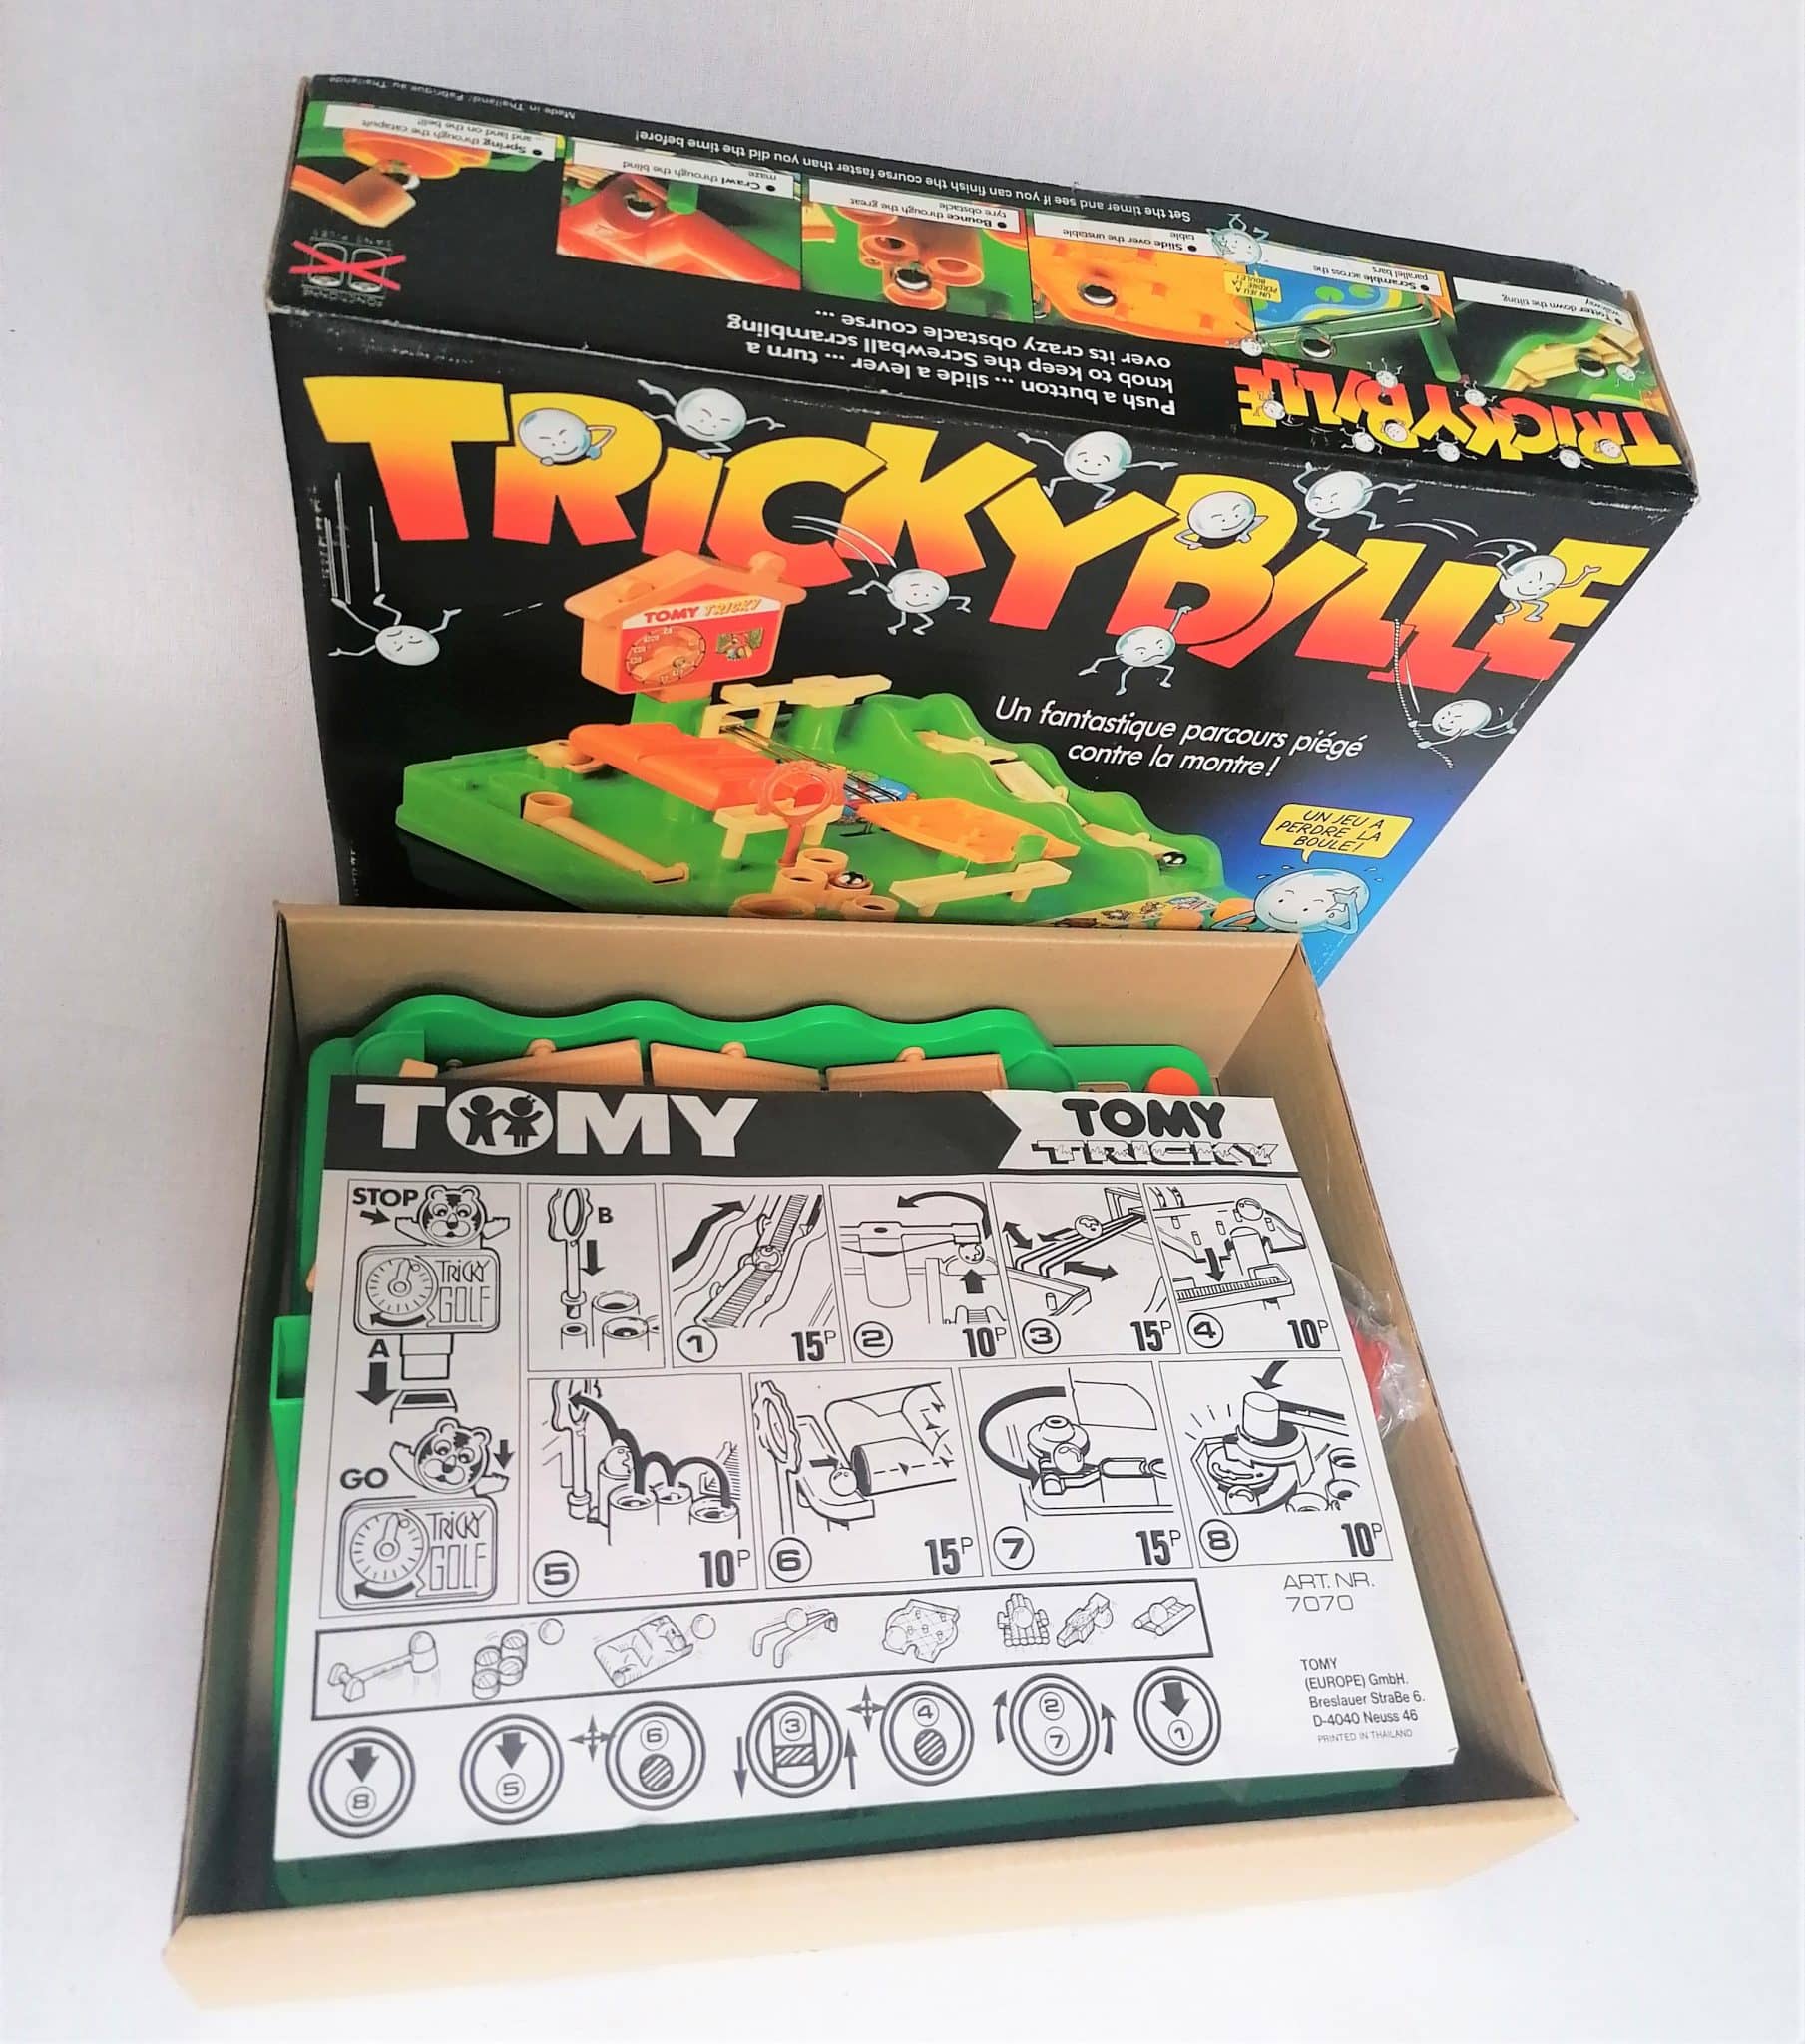 Tricky Bille - Jeu Tomy 1989 - jouets rétro jeux de société